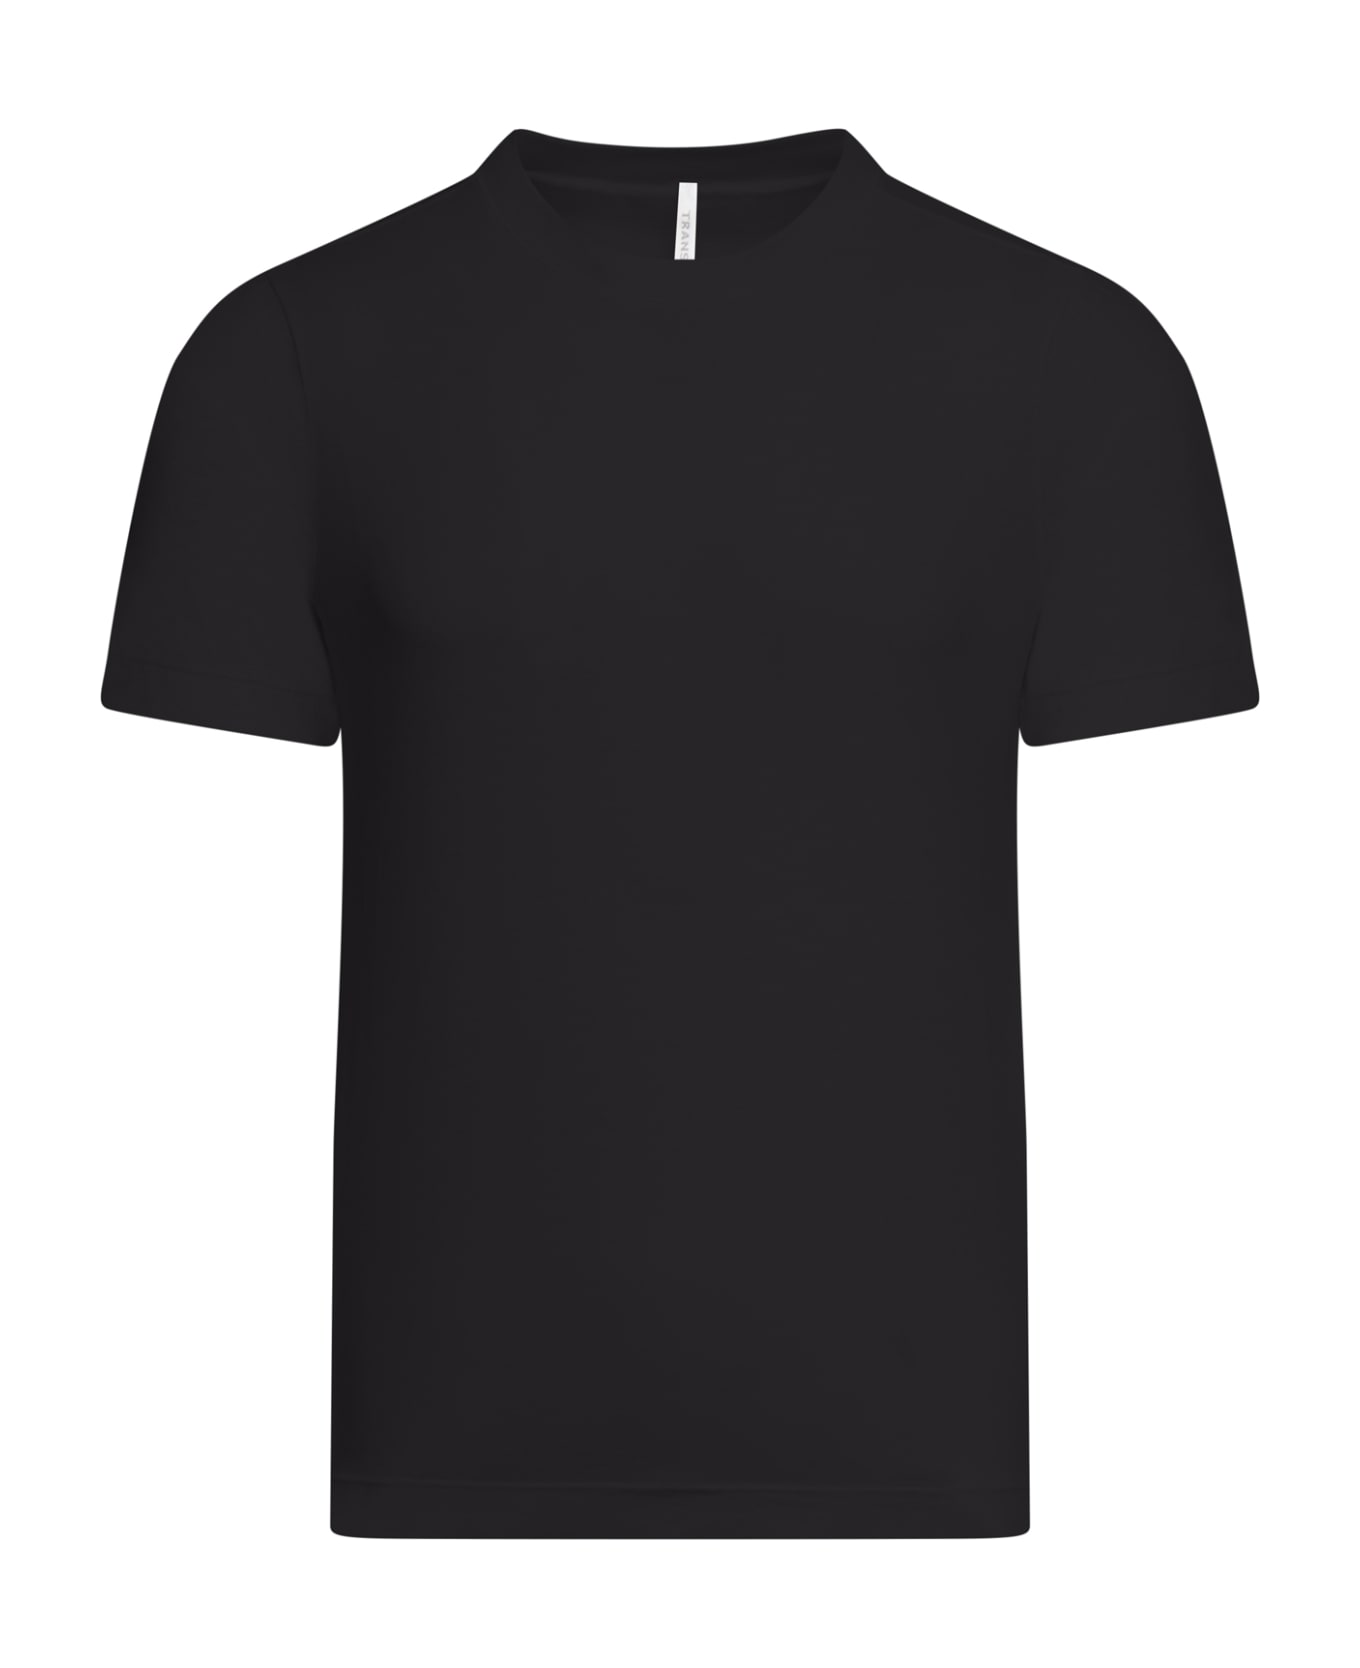 Transit Tshirt - Black シャツ